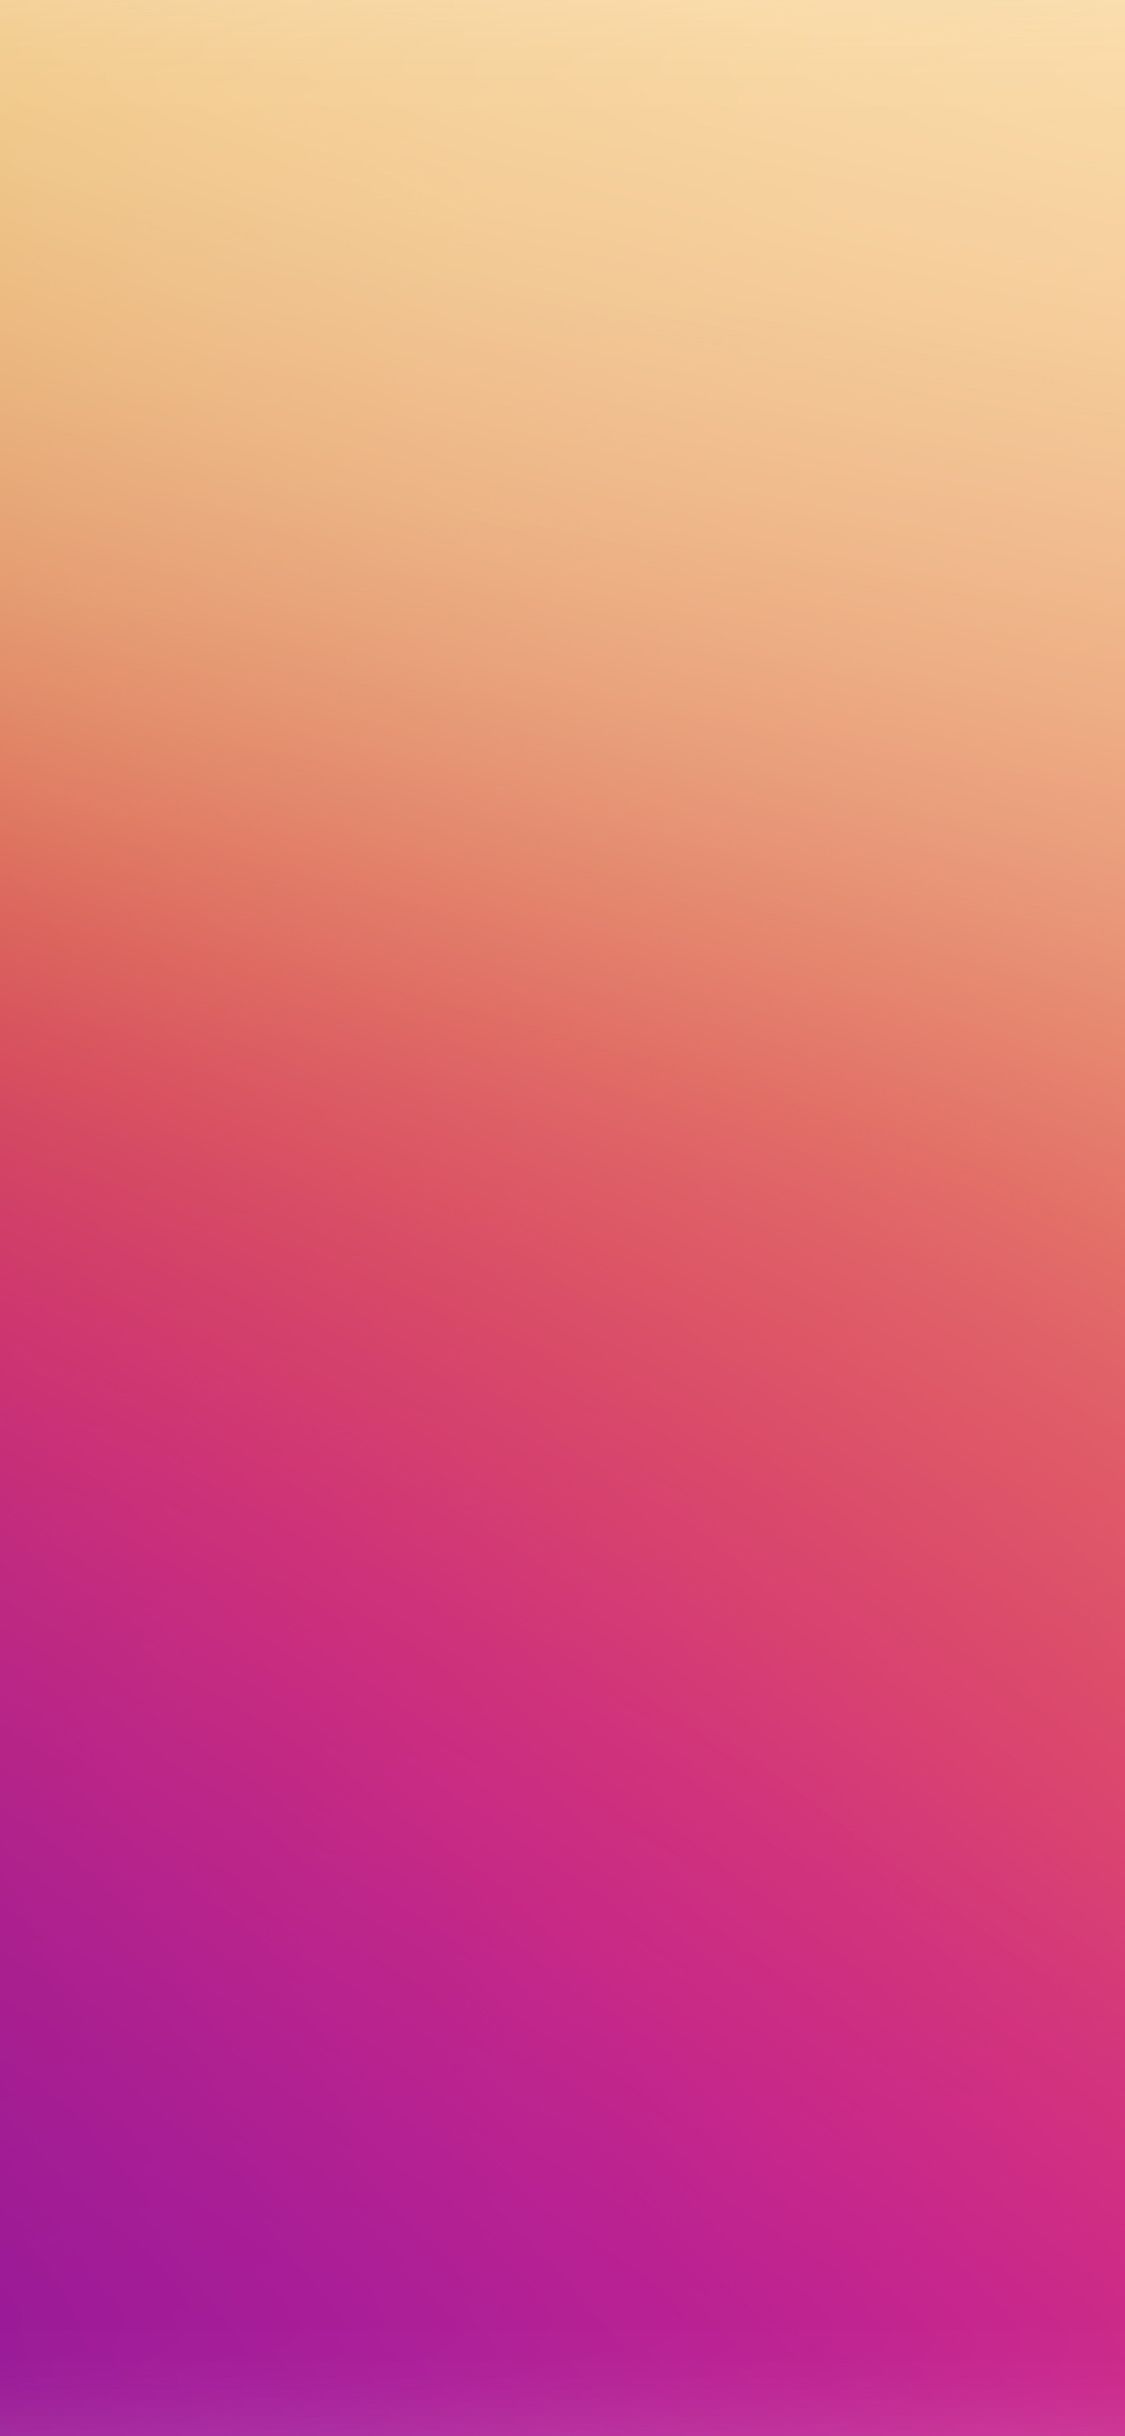 iPhone X wallpaper. ipad glow red yellow blur